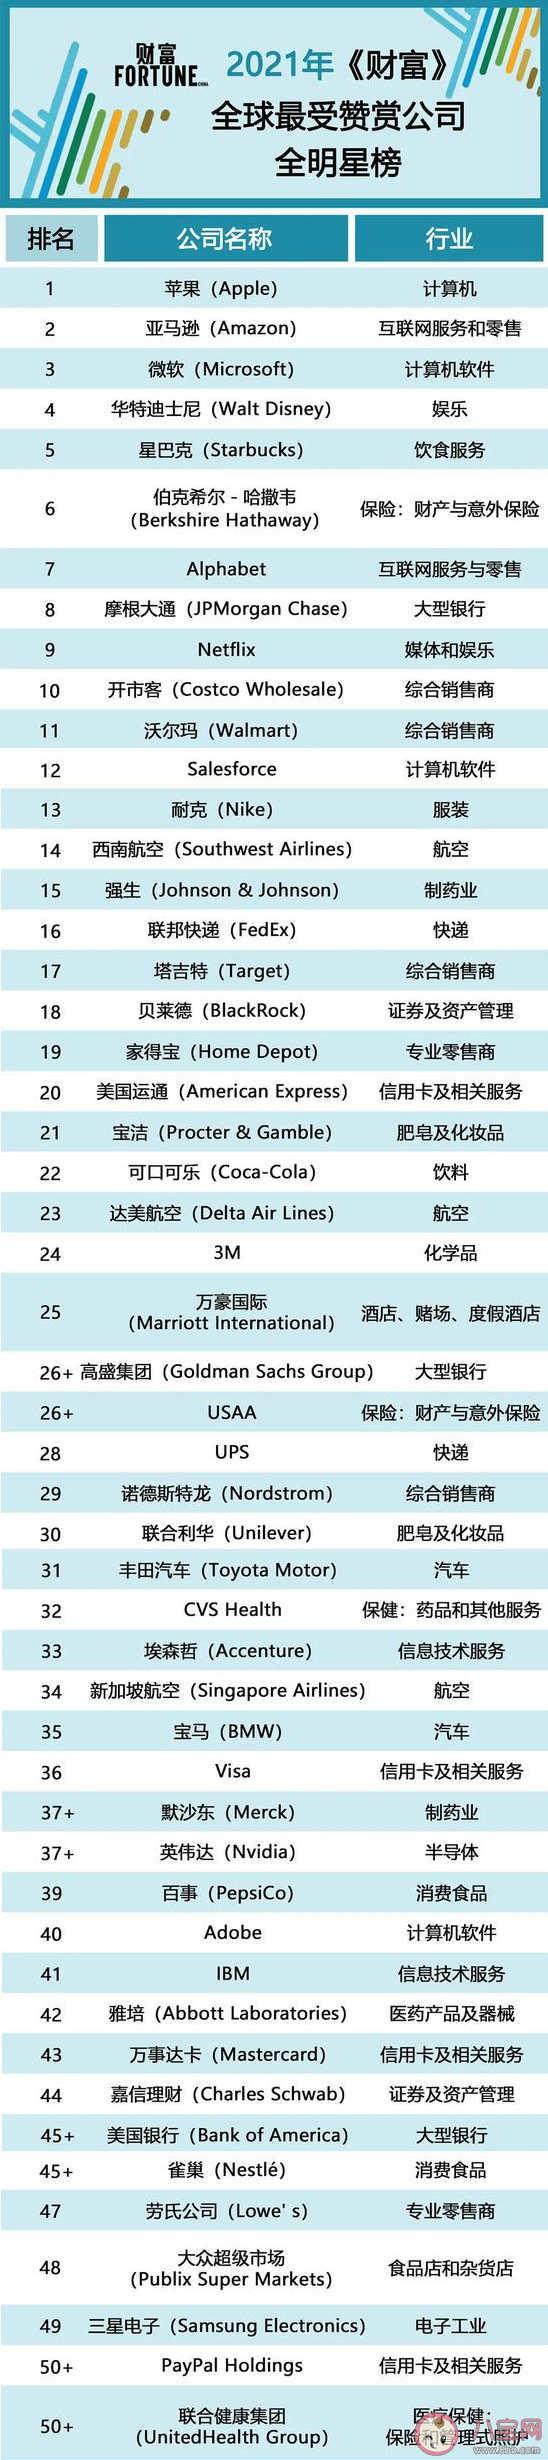 2021财富|2021财富全球最受赞赏公司榜排名榜单 中国哪些公司入选